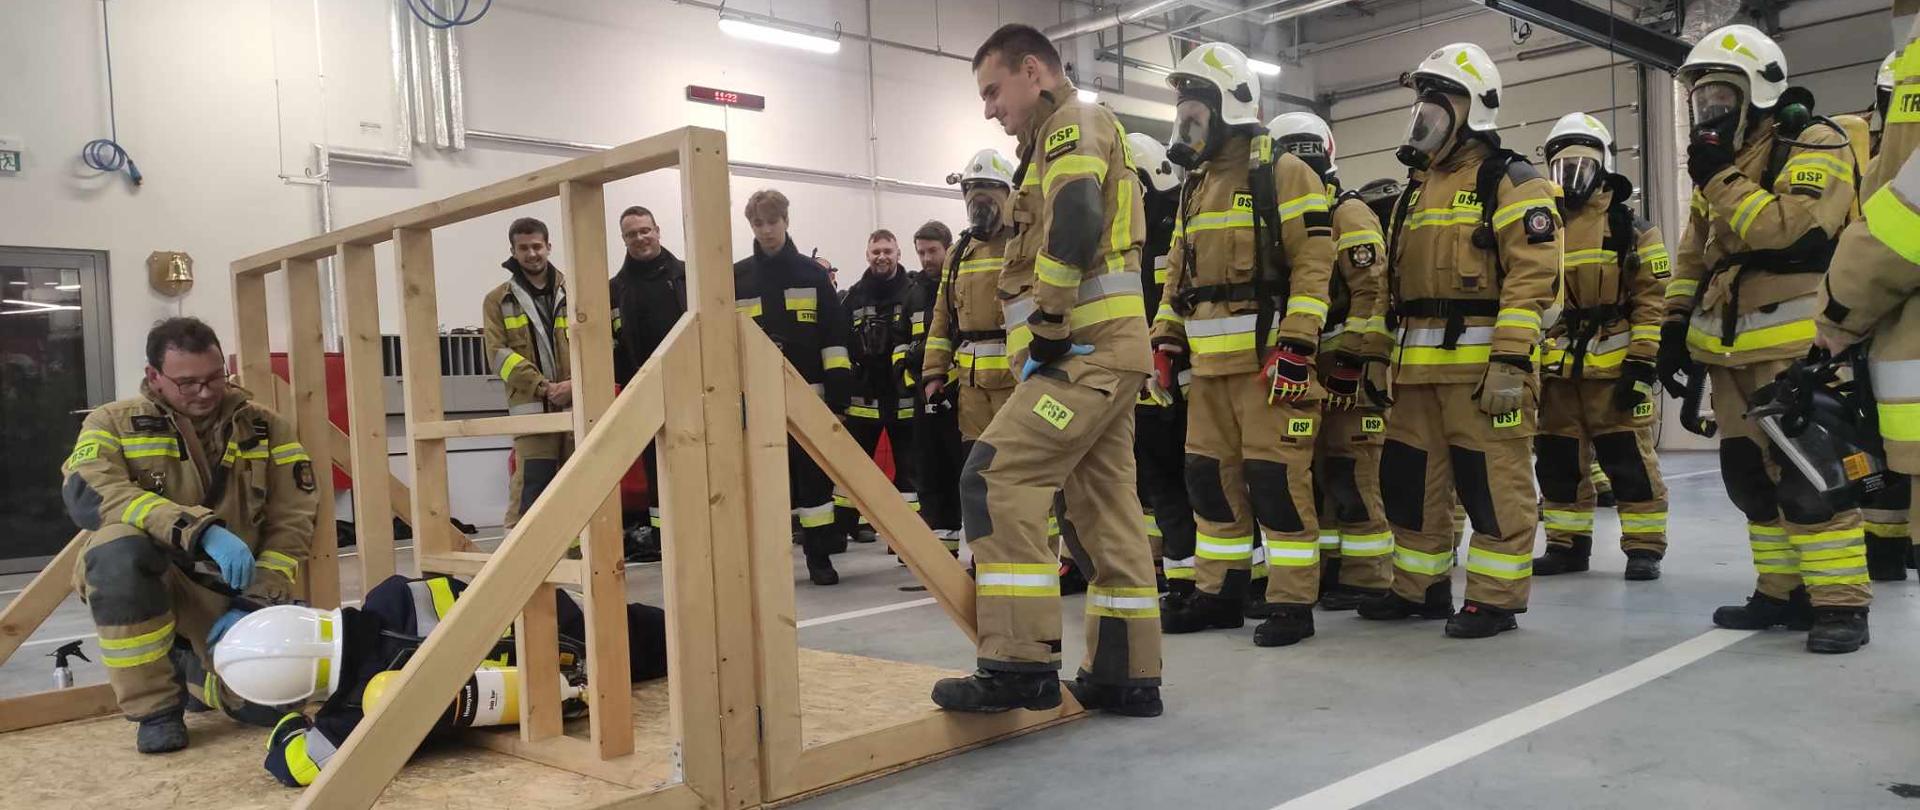 Na zdjęciu przyszli strażacy OSP wykonują ćwiczenie praktyczne w aparatach ochrony układu oddechowego.